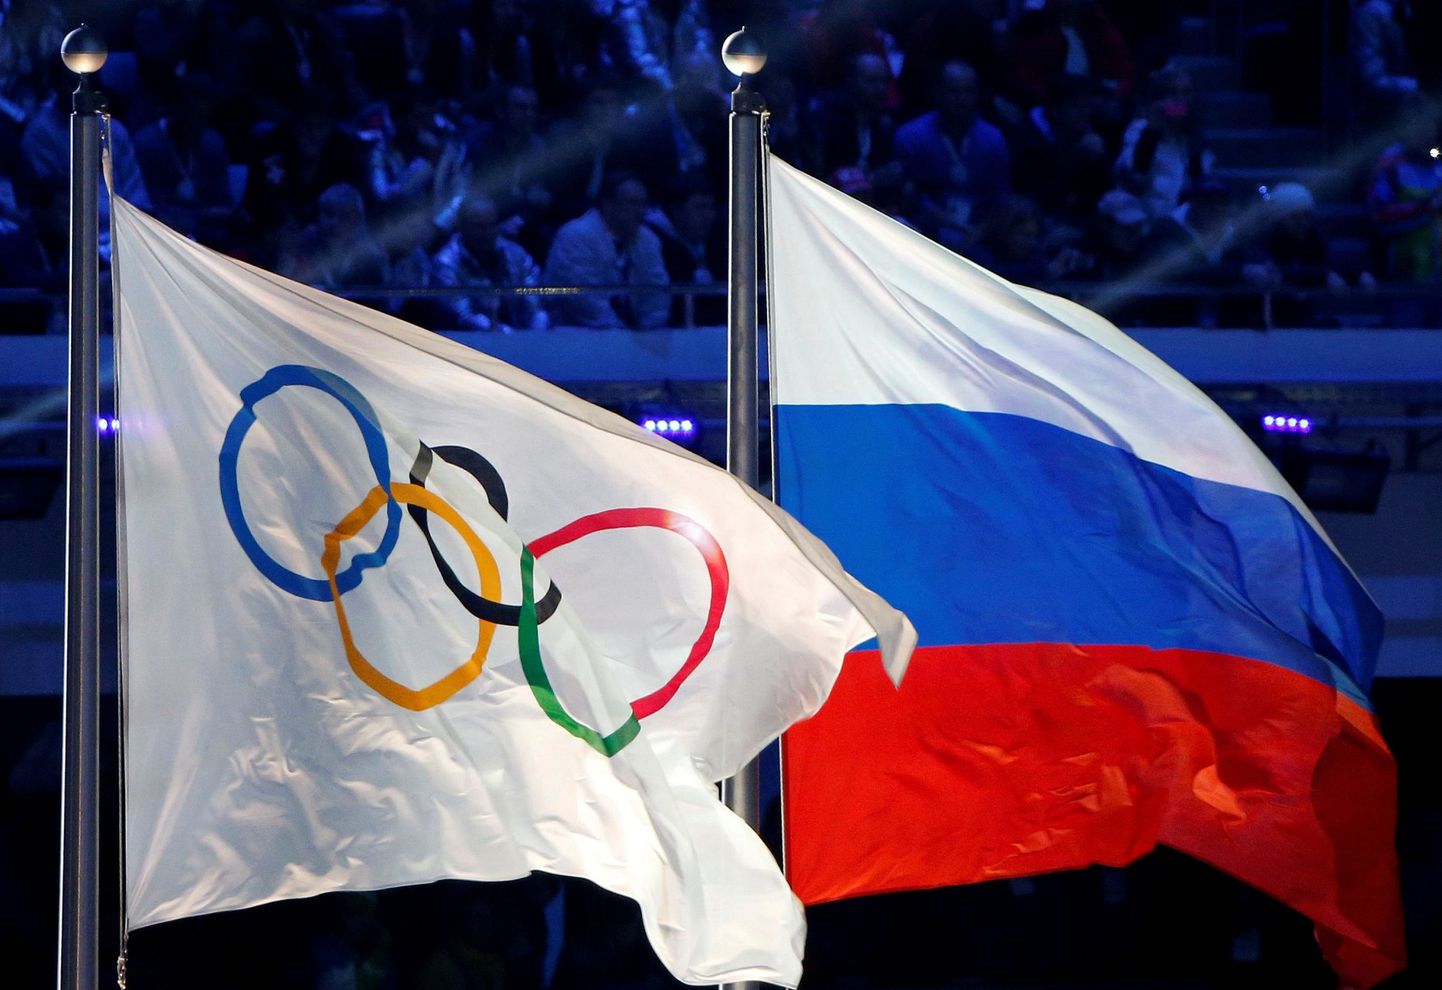 Rahvusvahelise Olümpiakomitee juhtkond otsustab 5. detsembril, kas Venemaa lubatakse 2018. aasta Pyeongchangi taliolümpiamängudele või mitte.